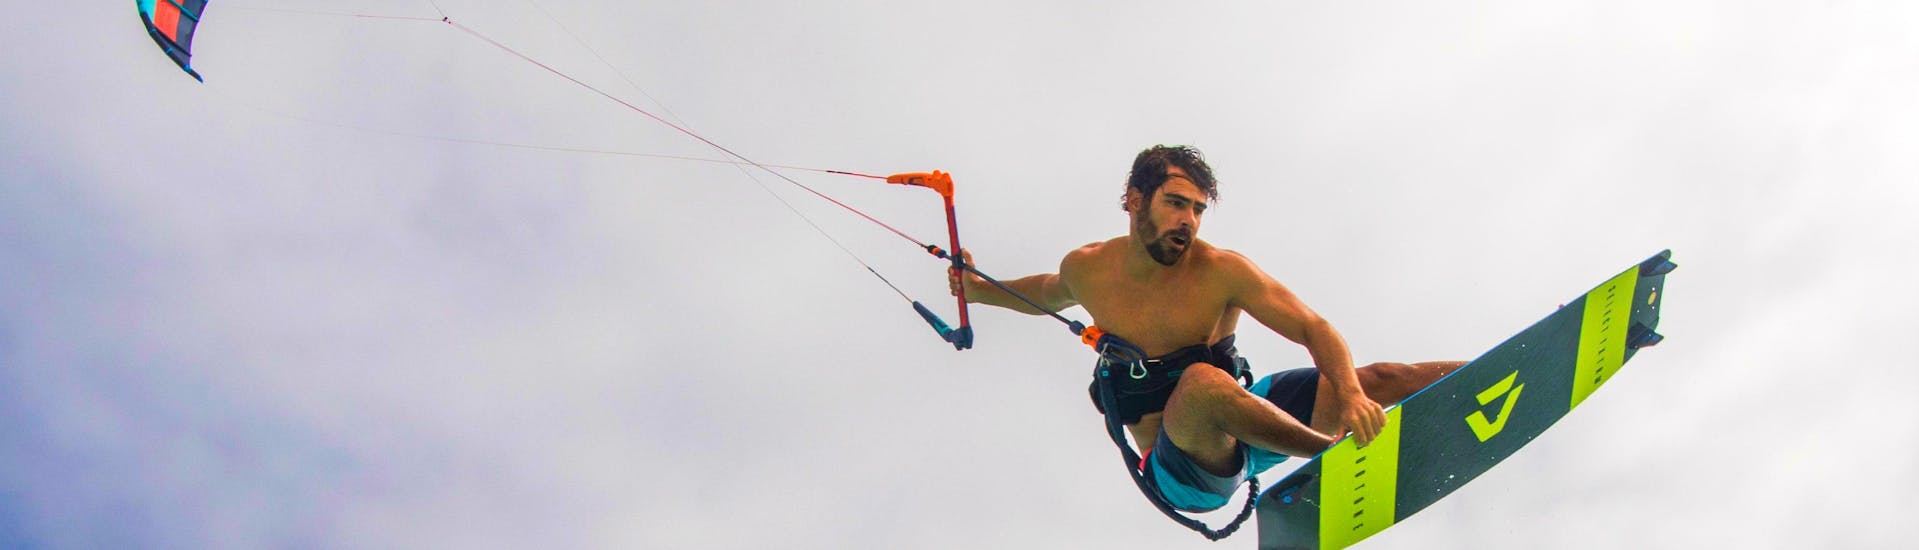 refresher-kitesurfing-lessons-advanced-kitereiders-hero